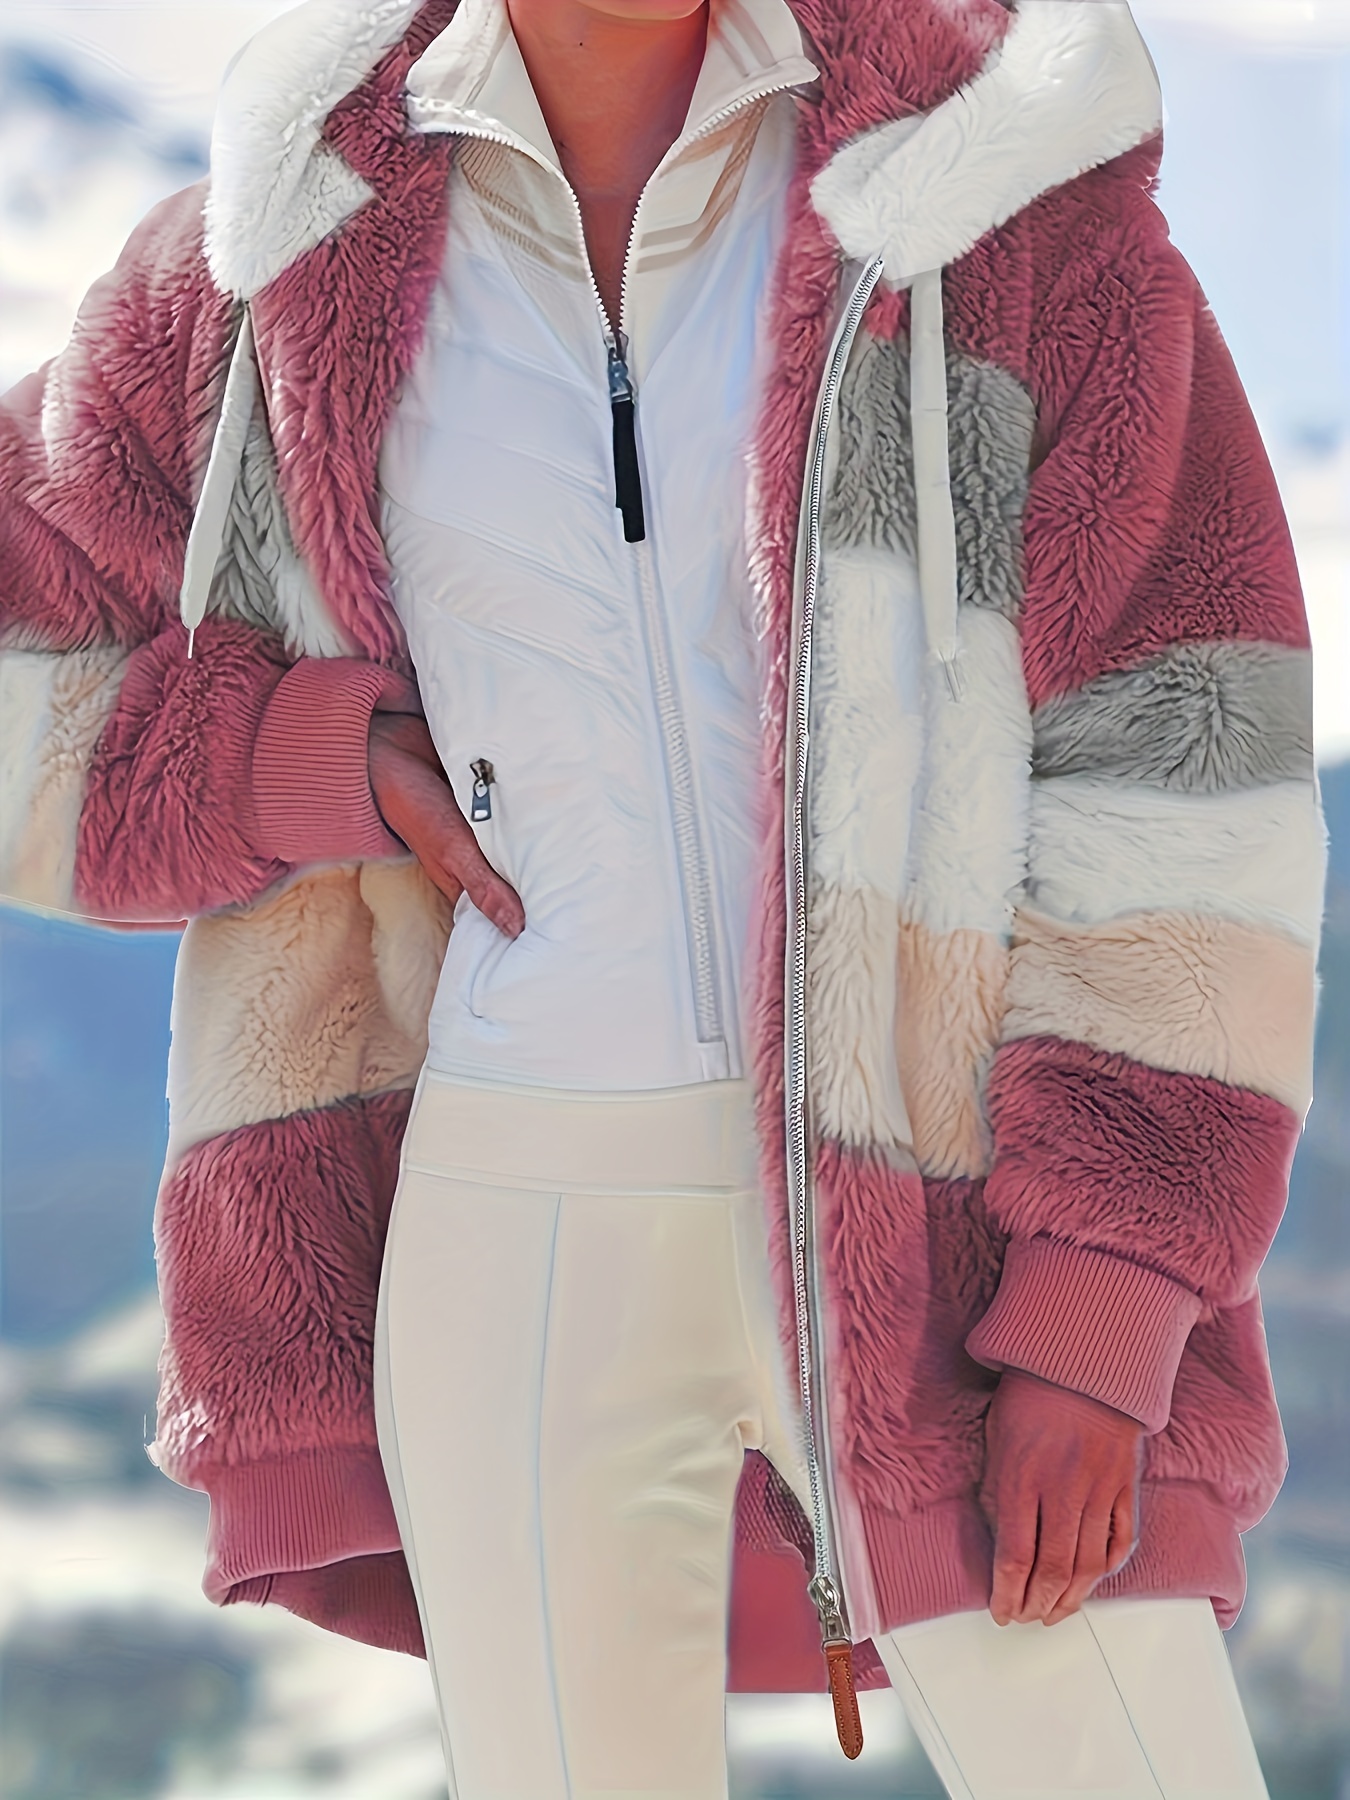 Womens Winter Coats Womens Winter Coats Fuzzy Fleece Thicken Jackets Sherpa  Lined Warm Heavy Jackets Windproof Outerwear with Fur Hood Coat 